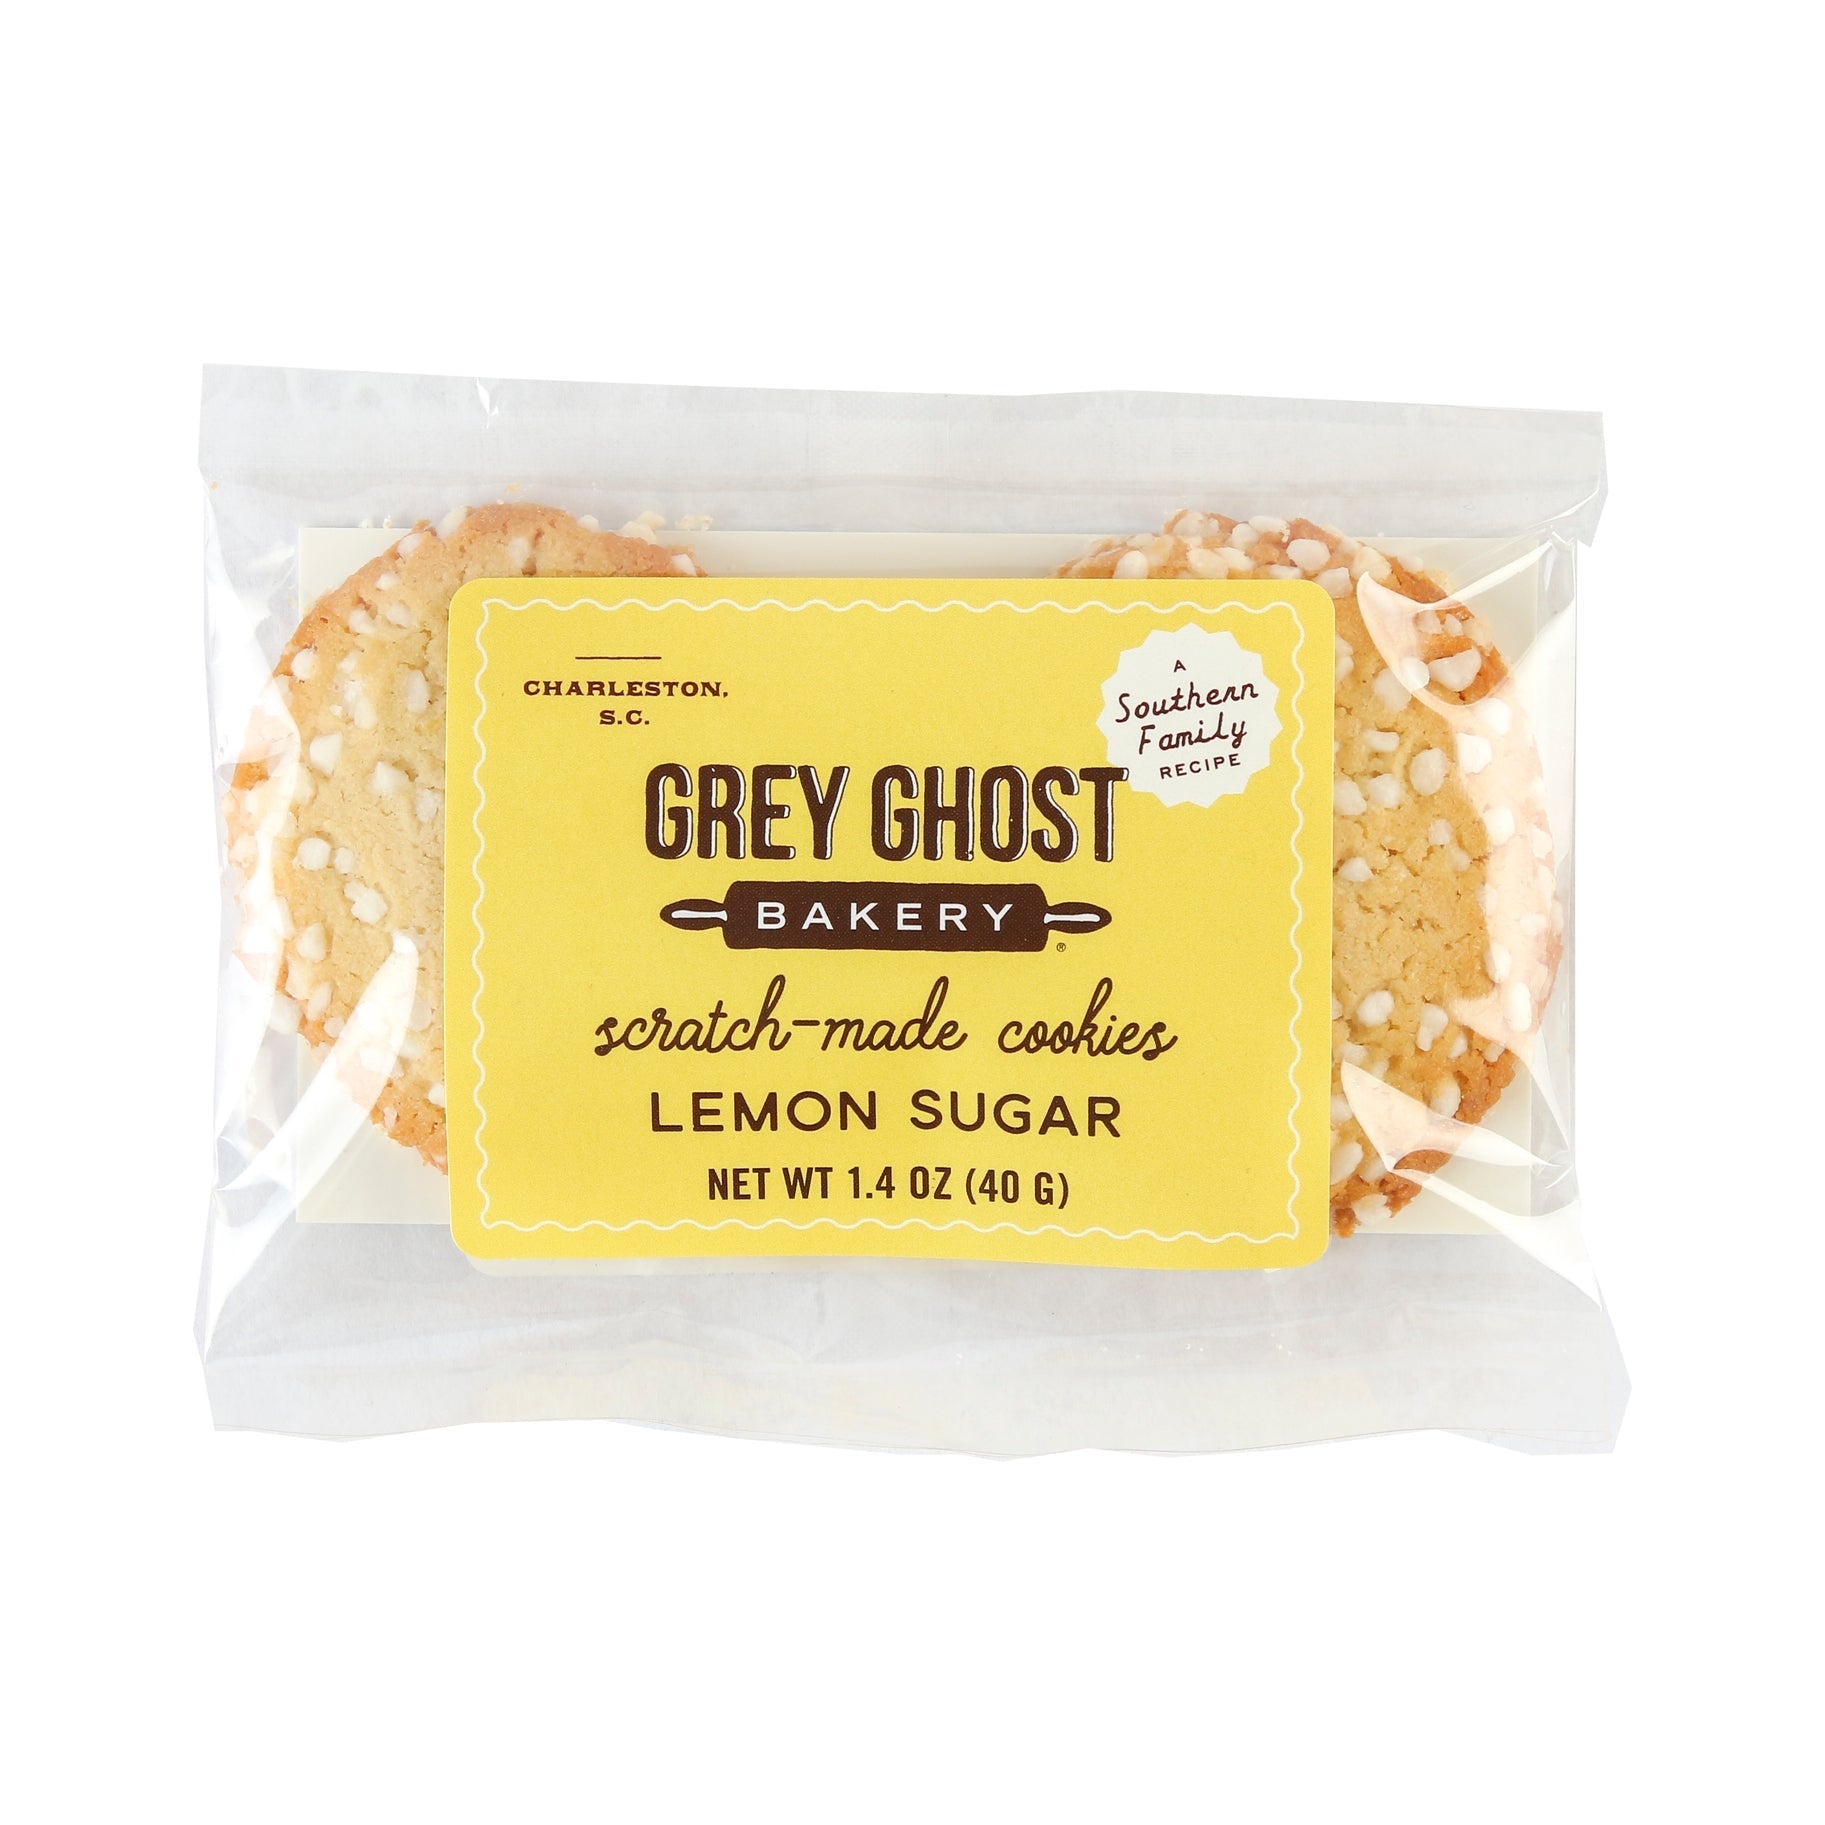 Lemon Sugar Cookies Two-Pack